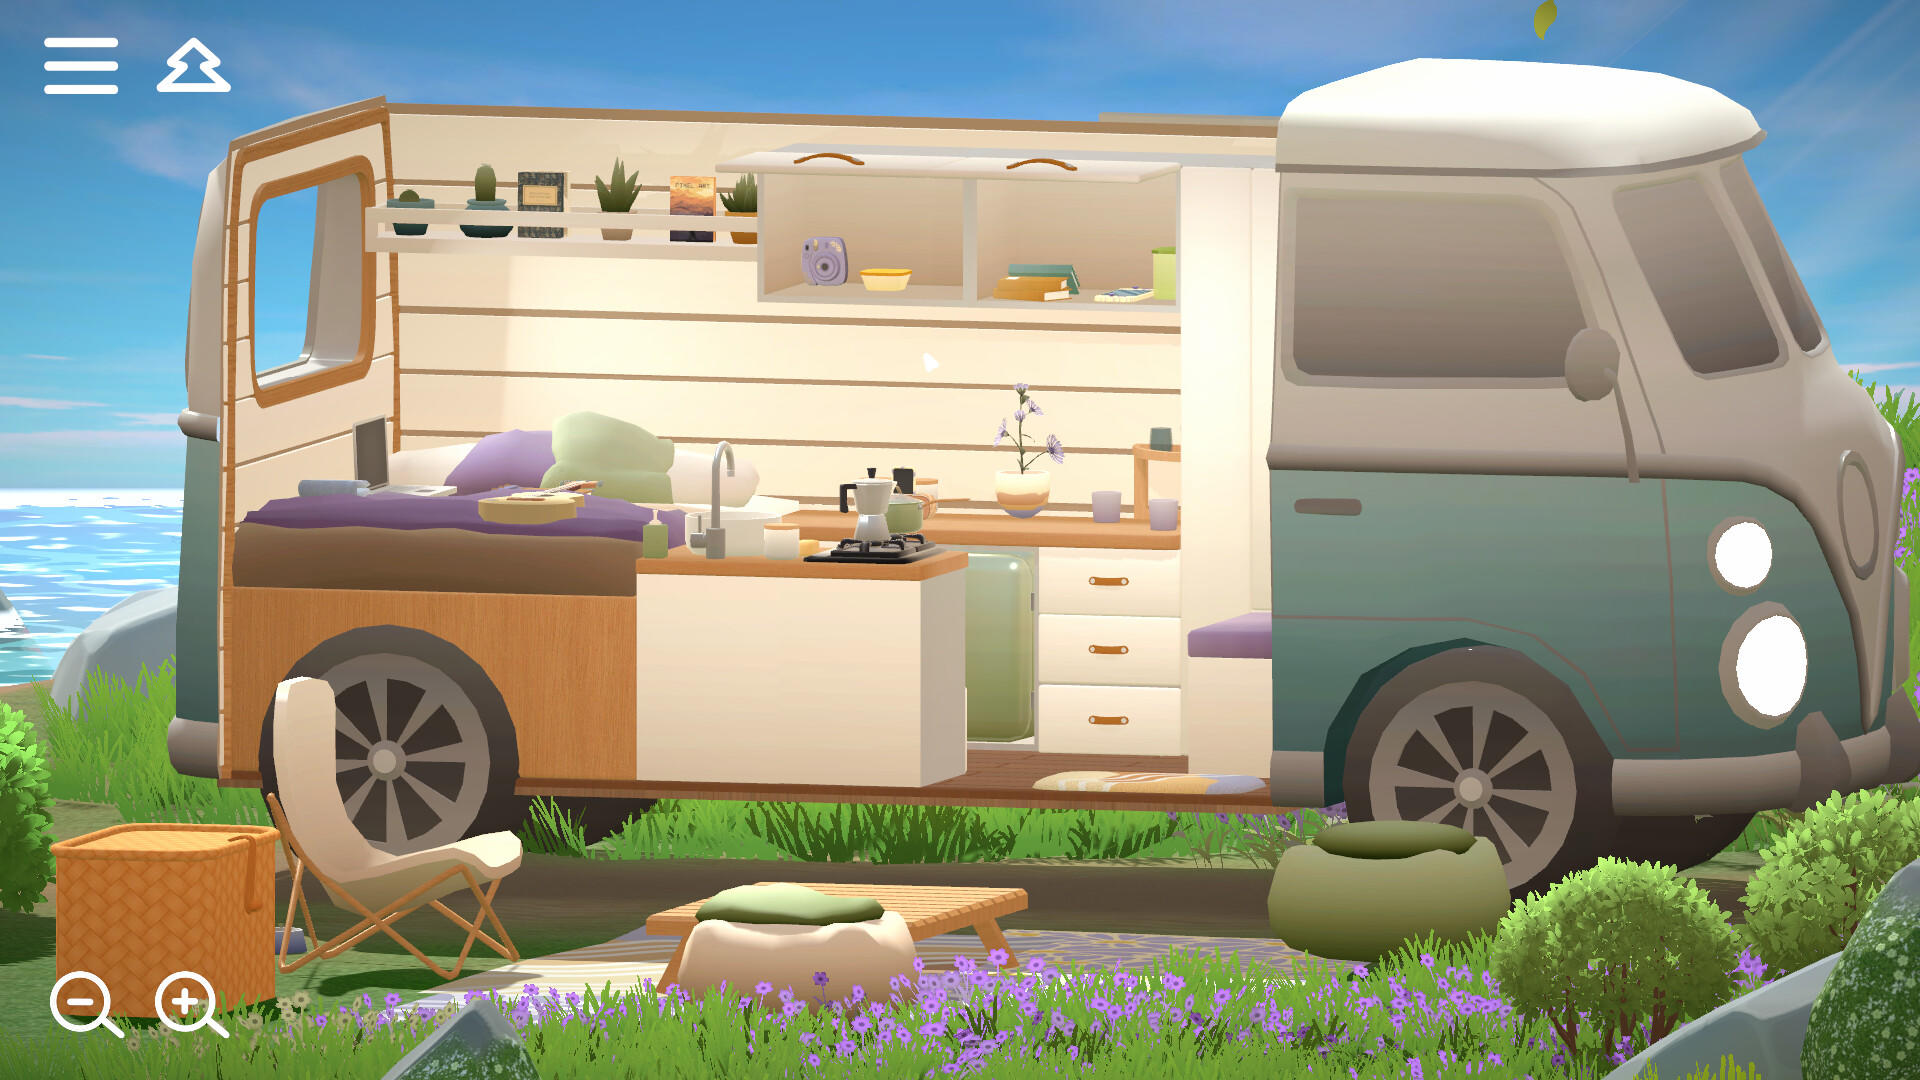 Camper Van: Make it Home screenshot game